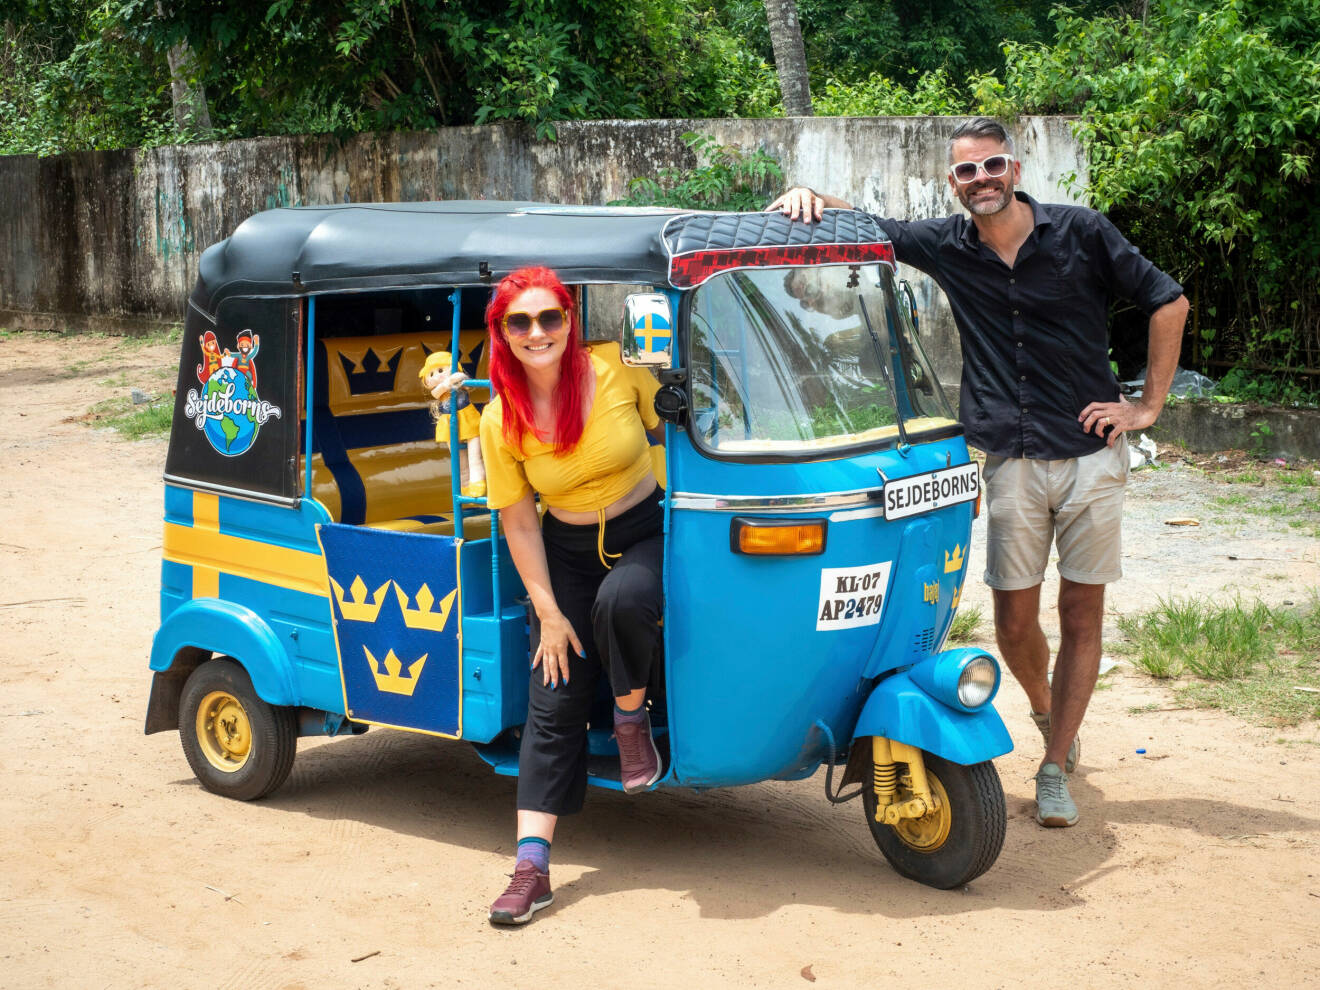 Louise och Anders står vid sin svenskmålade tuk-tuk i Indien.